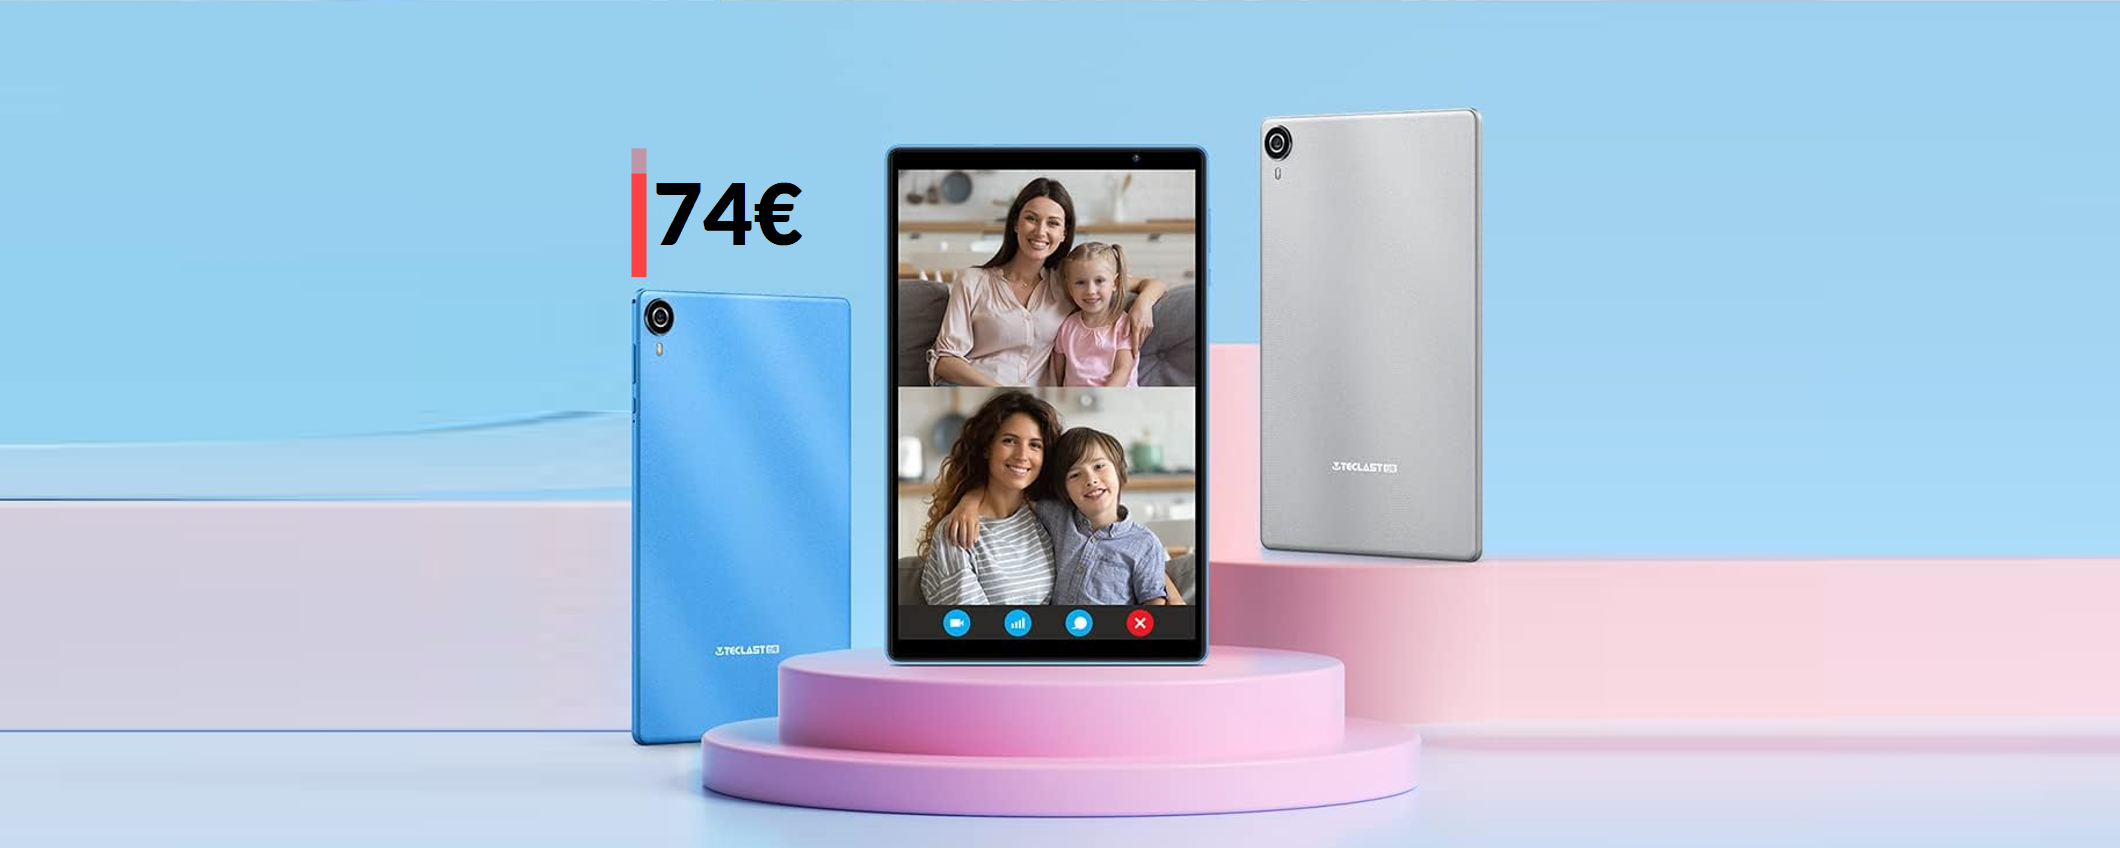 Tablet Android completo di TUTTO: con 2 SCONTI è tuo a 74€